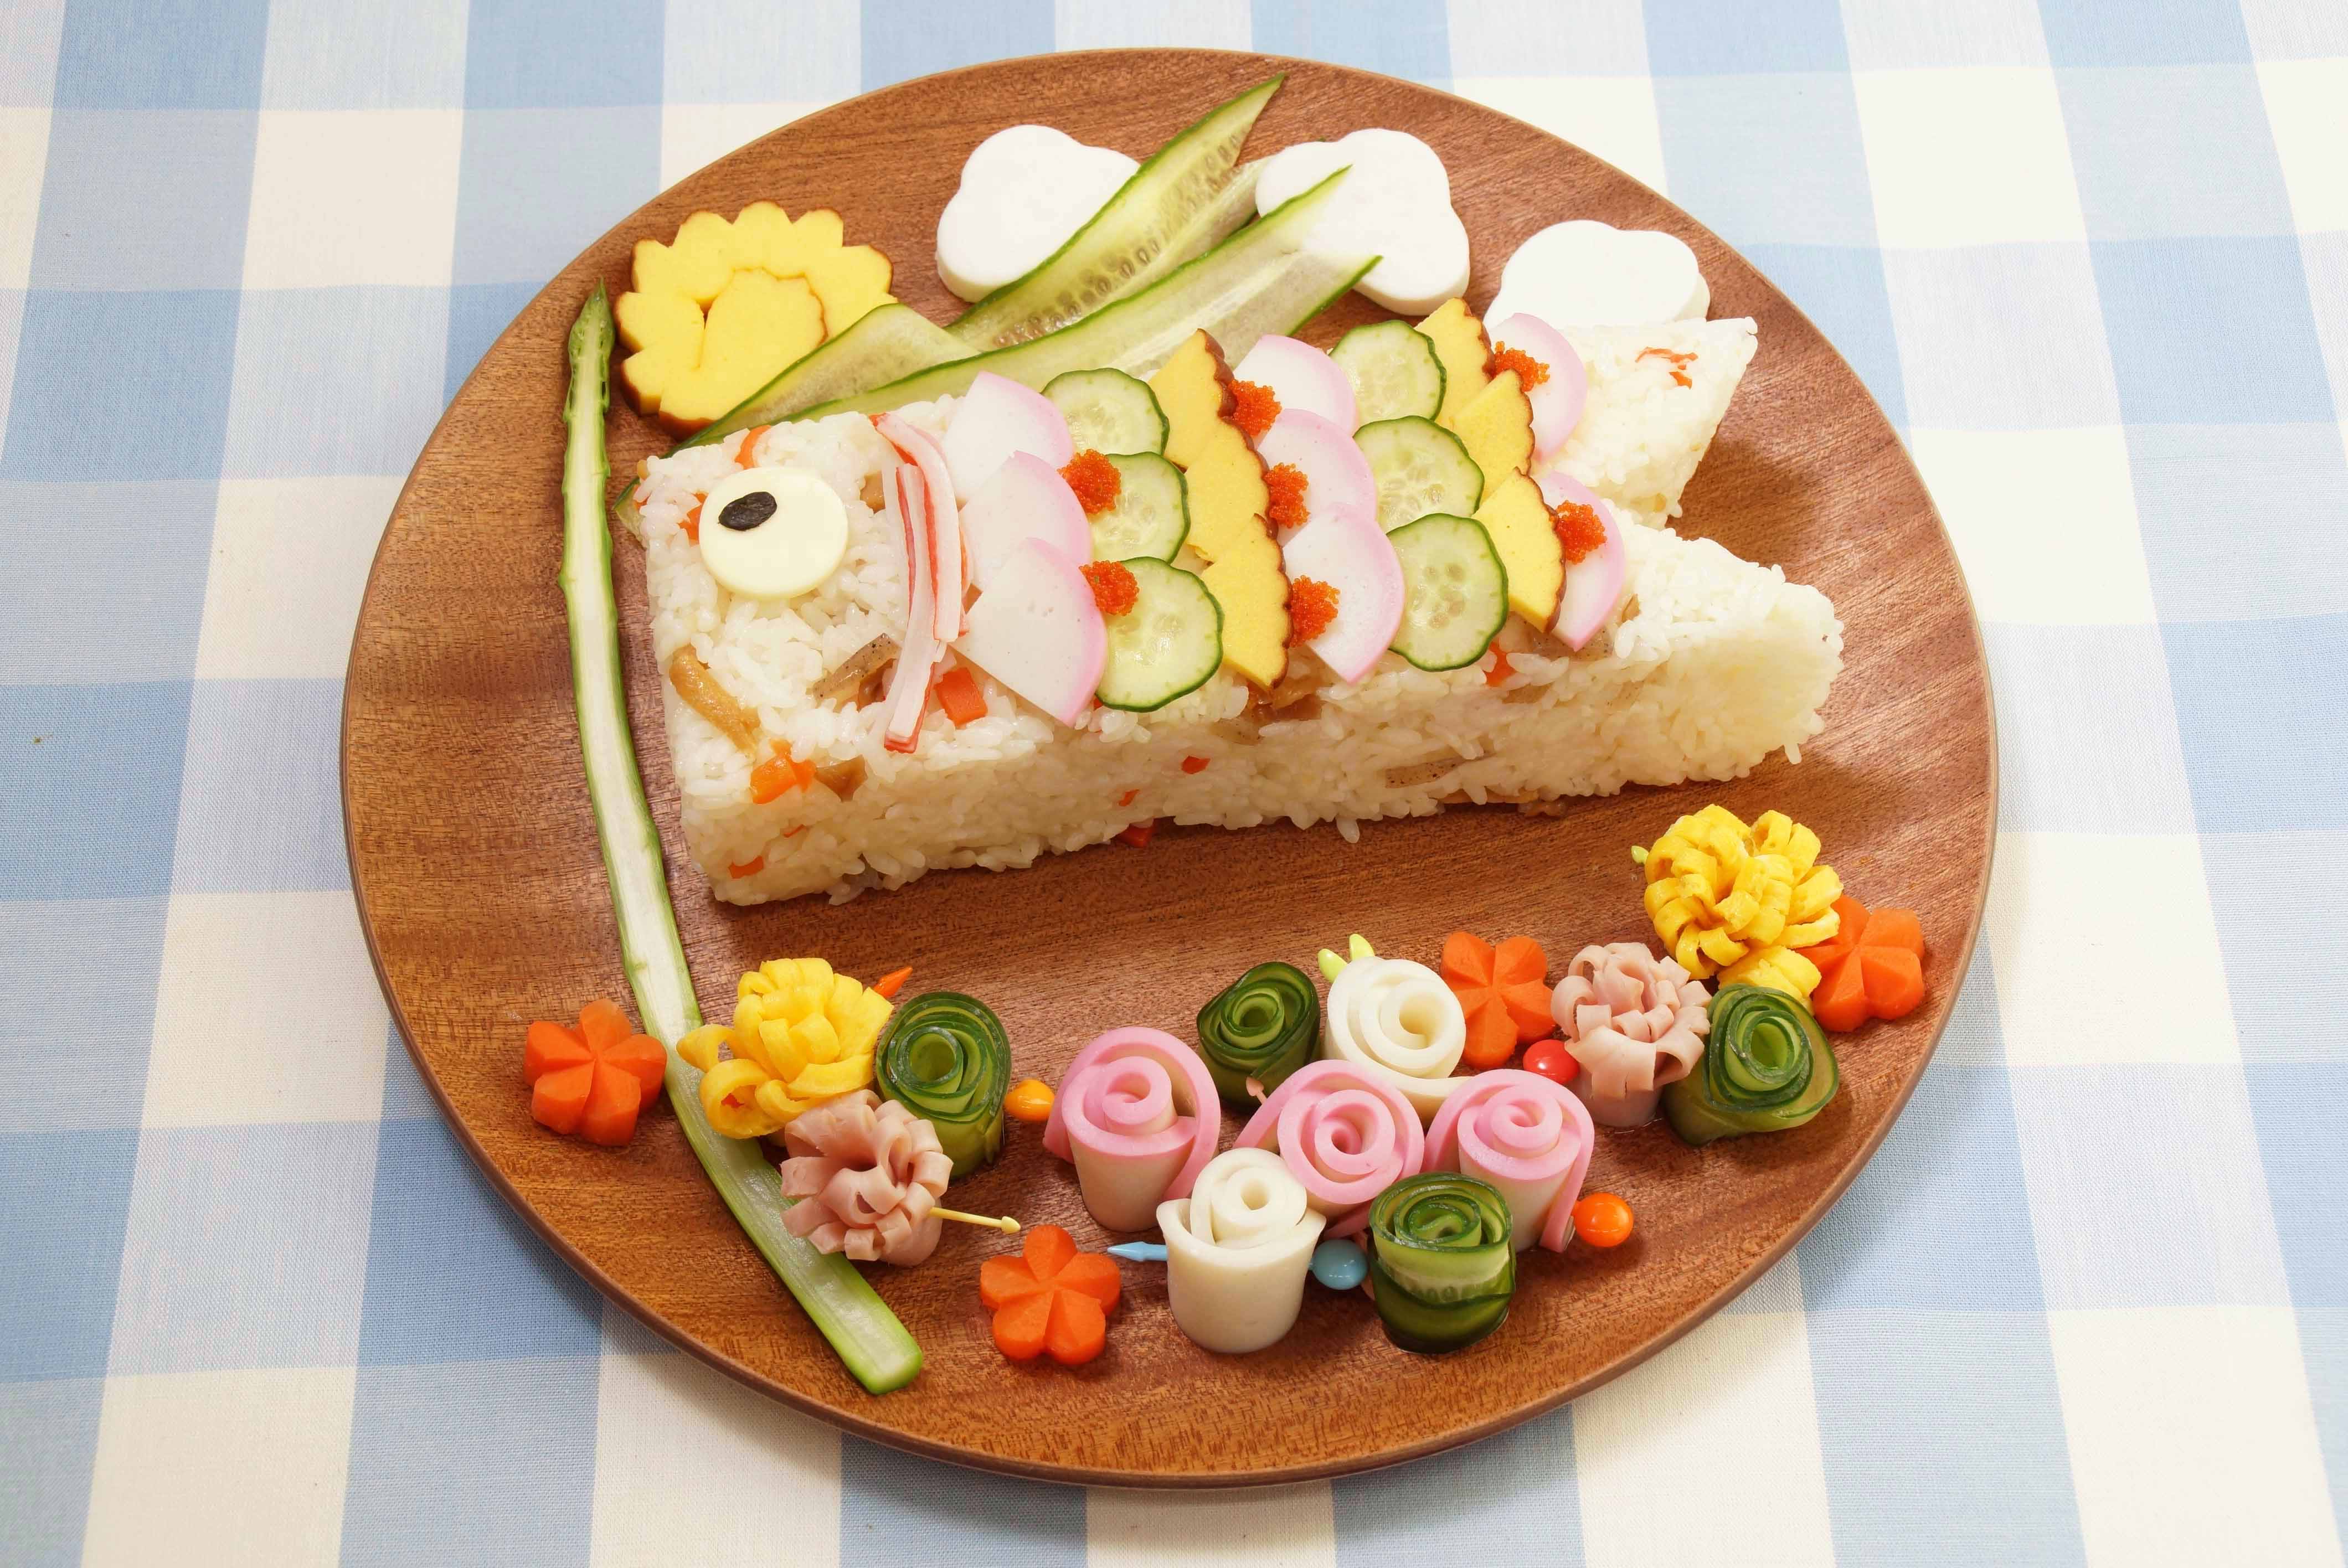 こどもの日 の食卓をもっと楽しく華やかに 練り製品を使った子どもが喜ぶ デコ寿司 5月5日は 端午の節供 株式会社紀文食品のプレスリリース